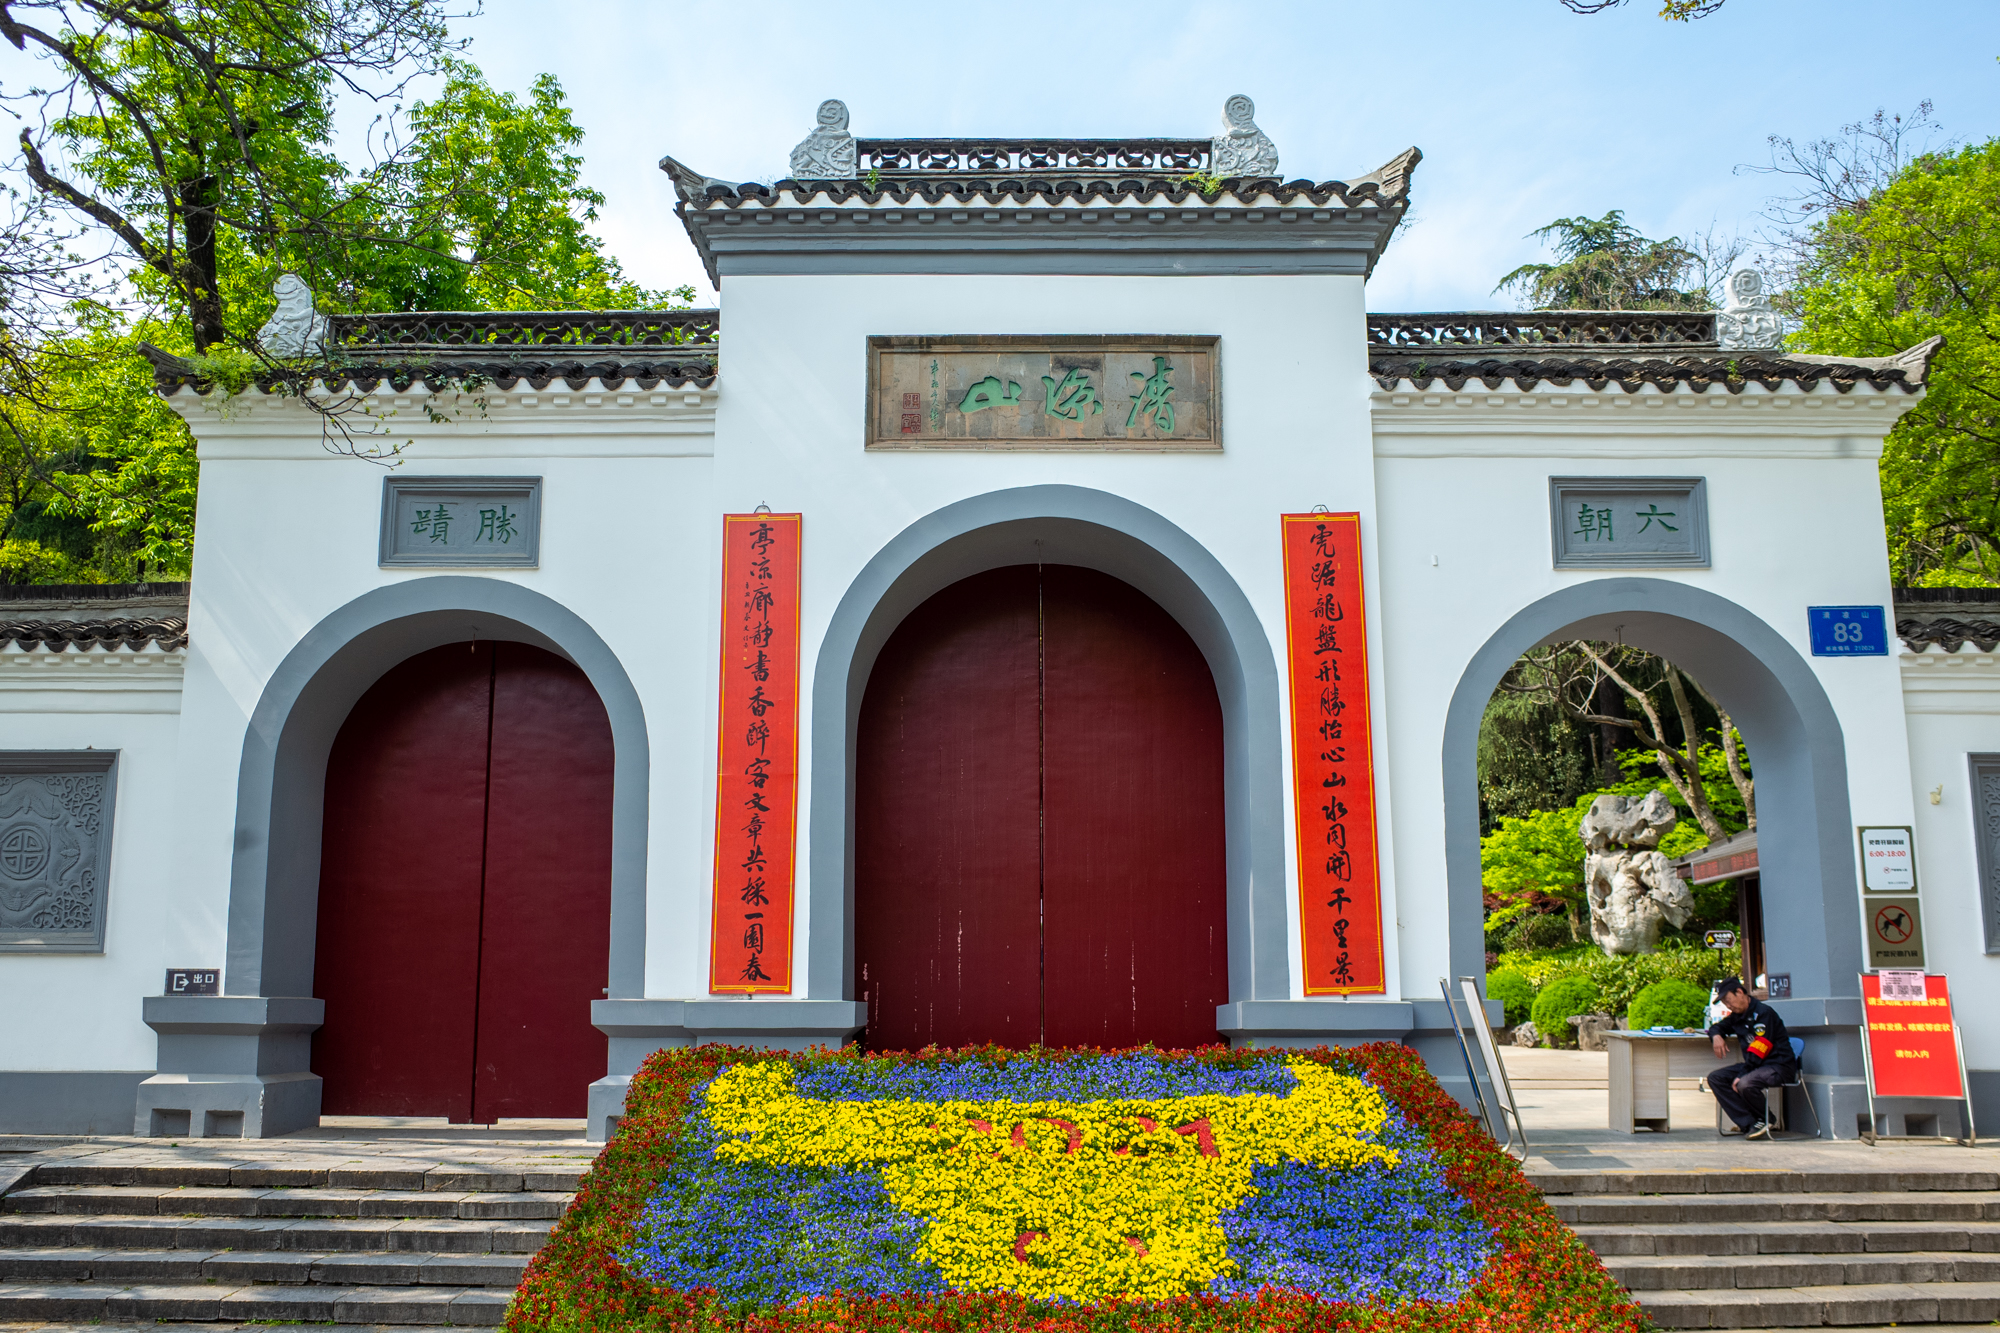 不知不觉,南京崇正书院的木绣球花要开了,希望4月可以正常赏花